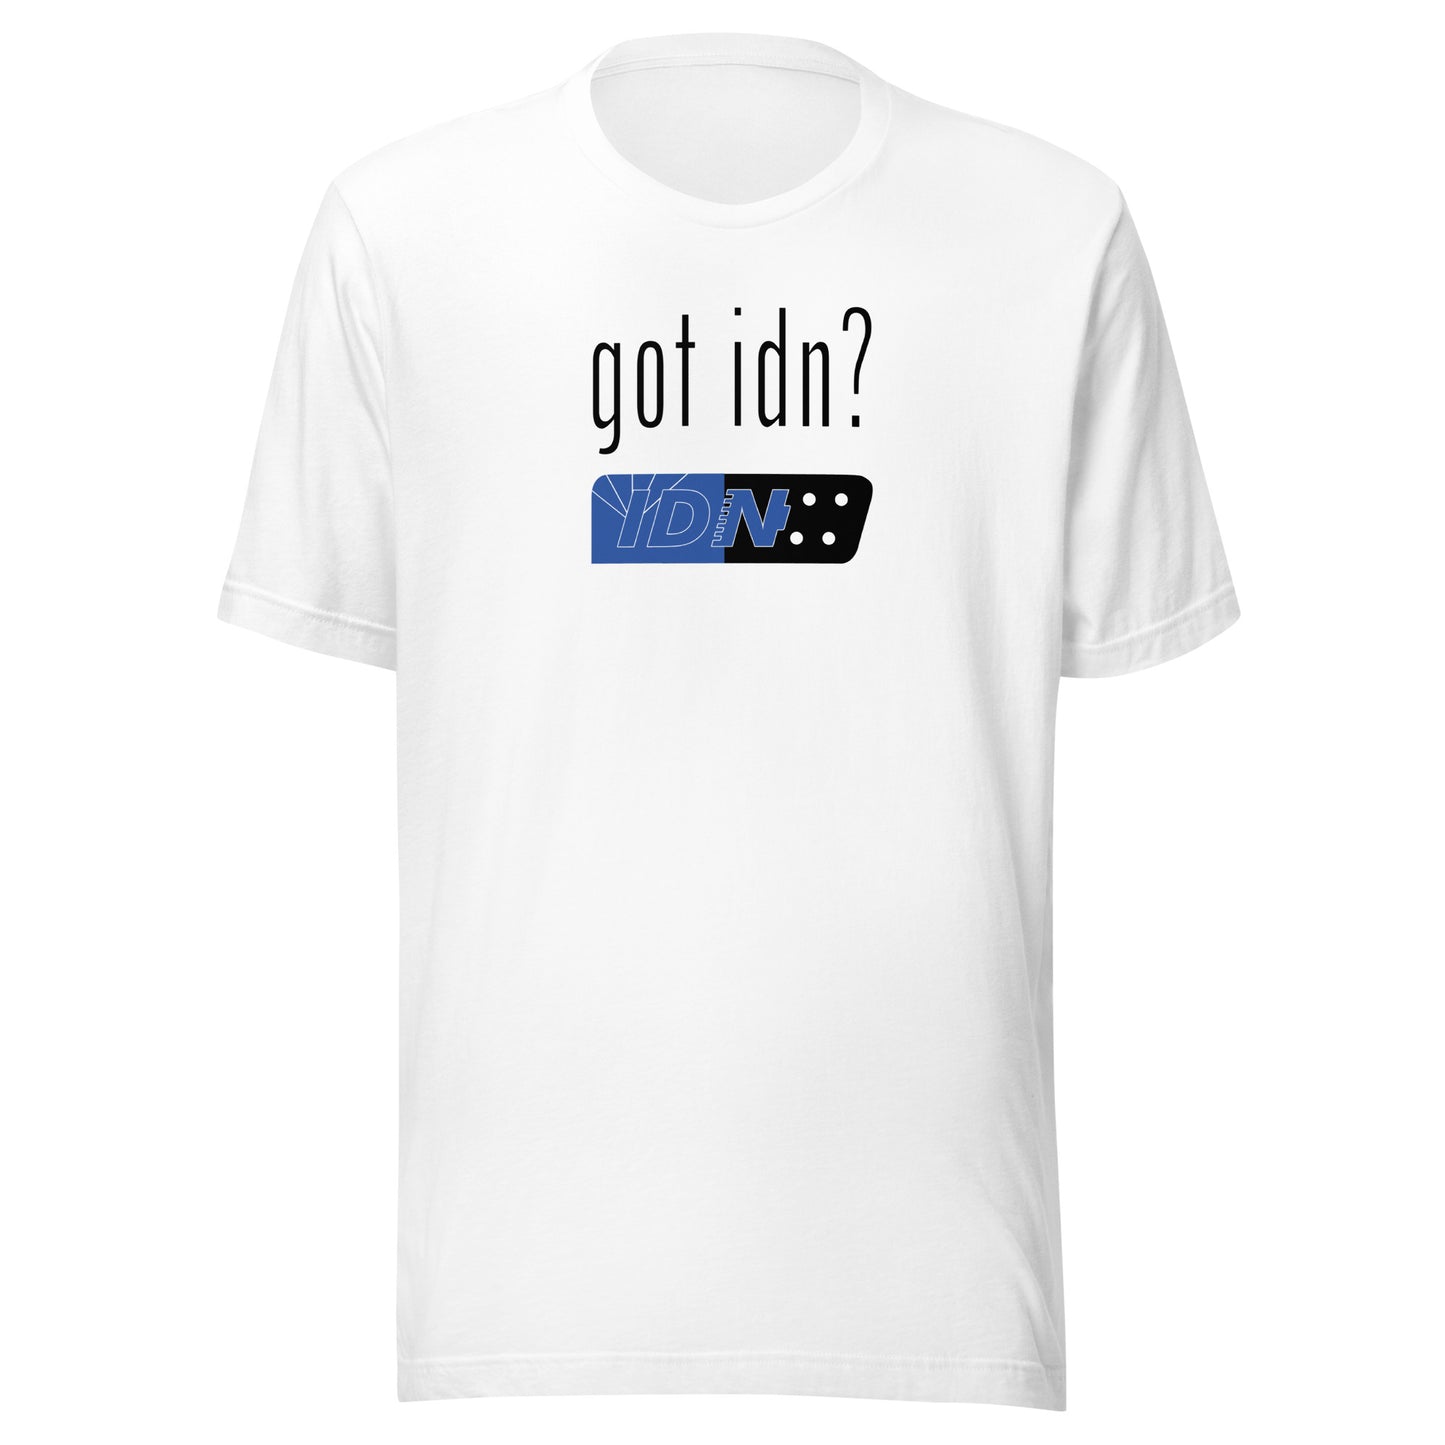 Got IDN? - Unisex t-shirt